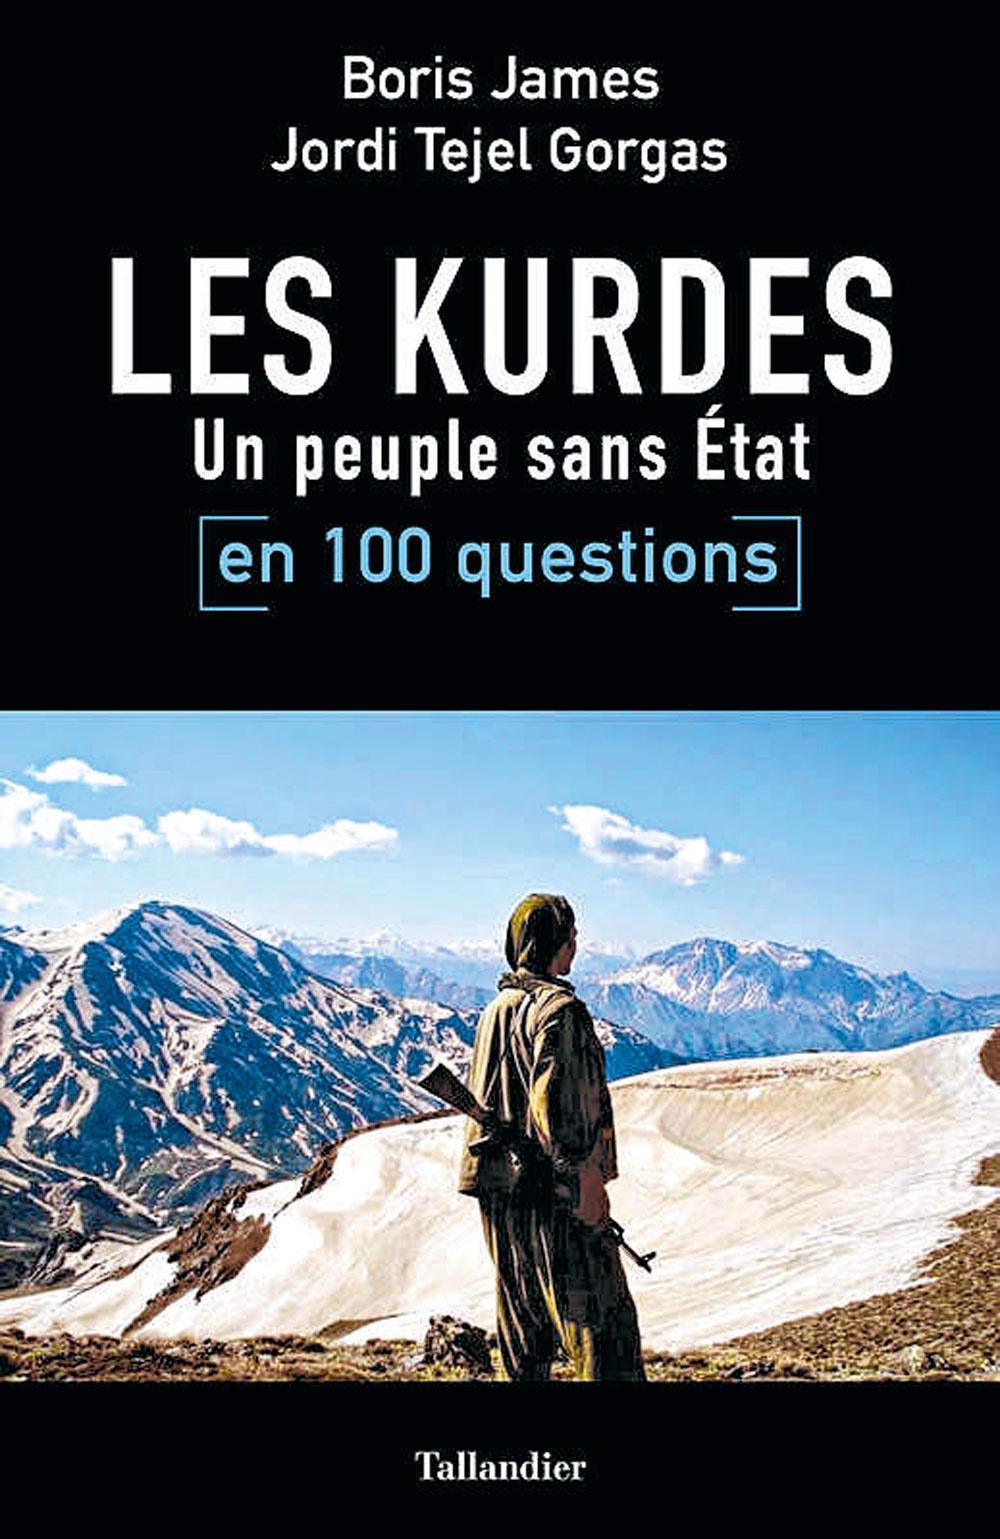 Les Kurdes en 100 questions, par Boris James et Jordi Tejel Gorgas, Tallandier, 382 p.